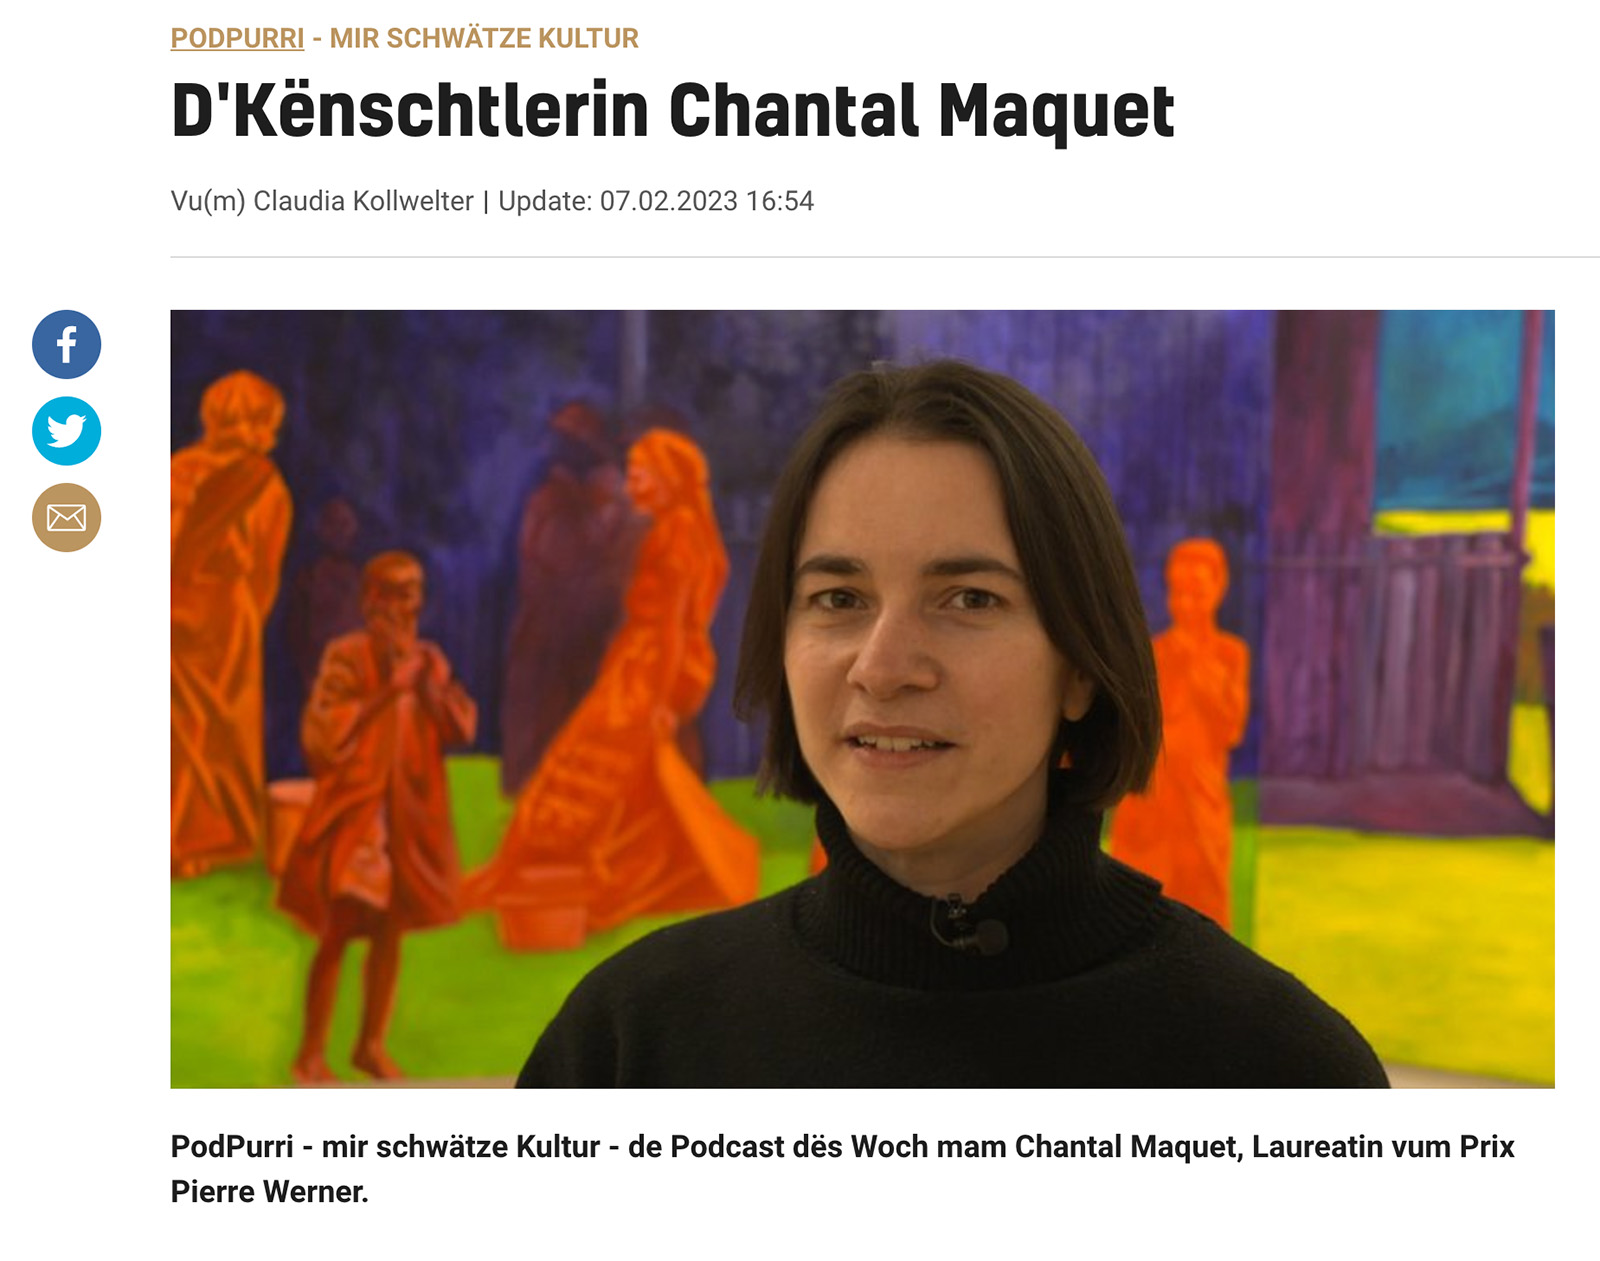 News of Reuter Bausch Art Gallery PodPurri - mir schwtze Kultur